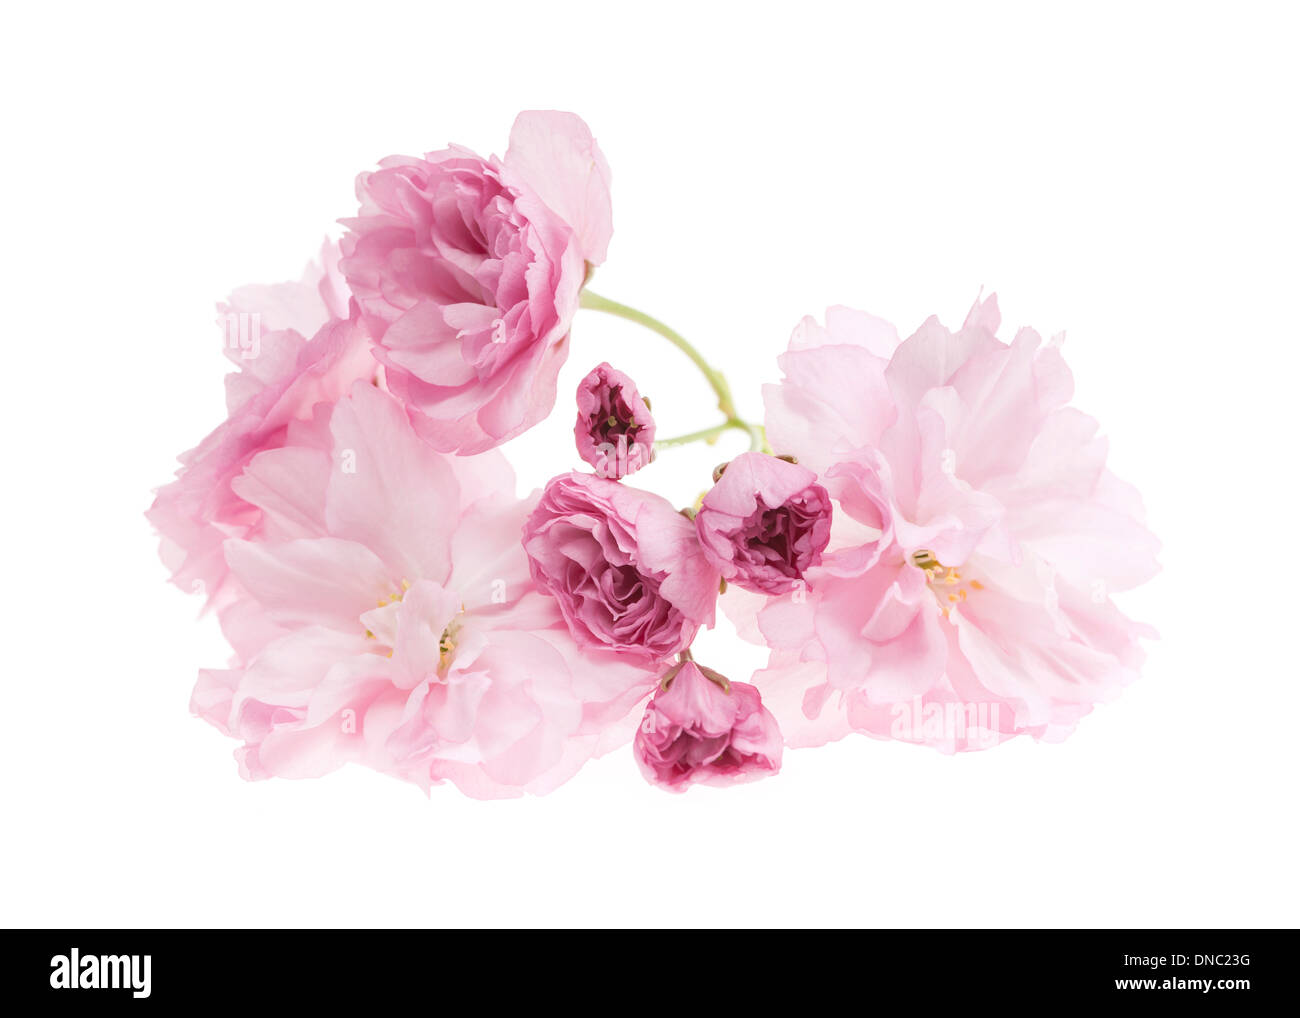 Fleur de cerisier rose fleurs close up isolé sur fond blanc Banque D'Images